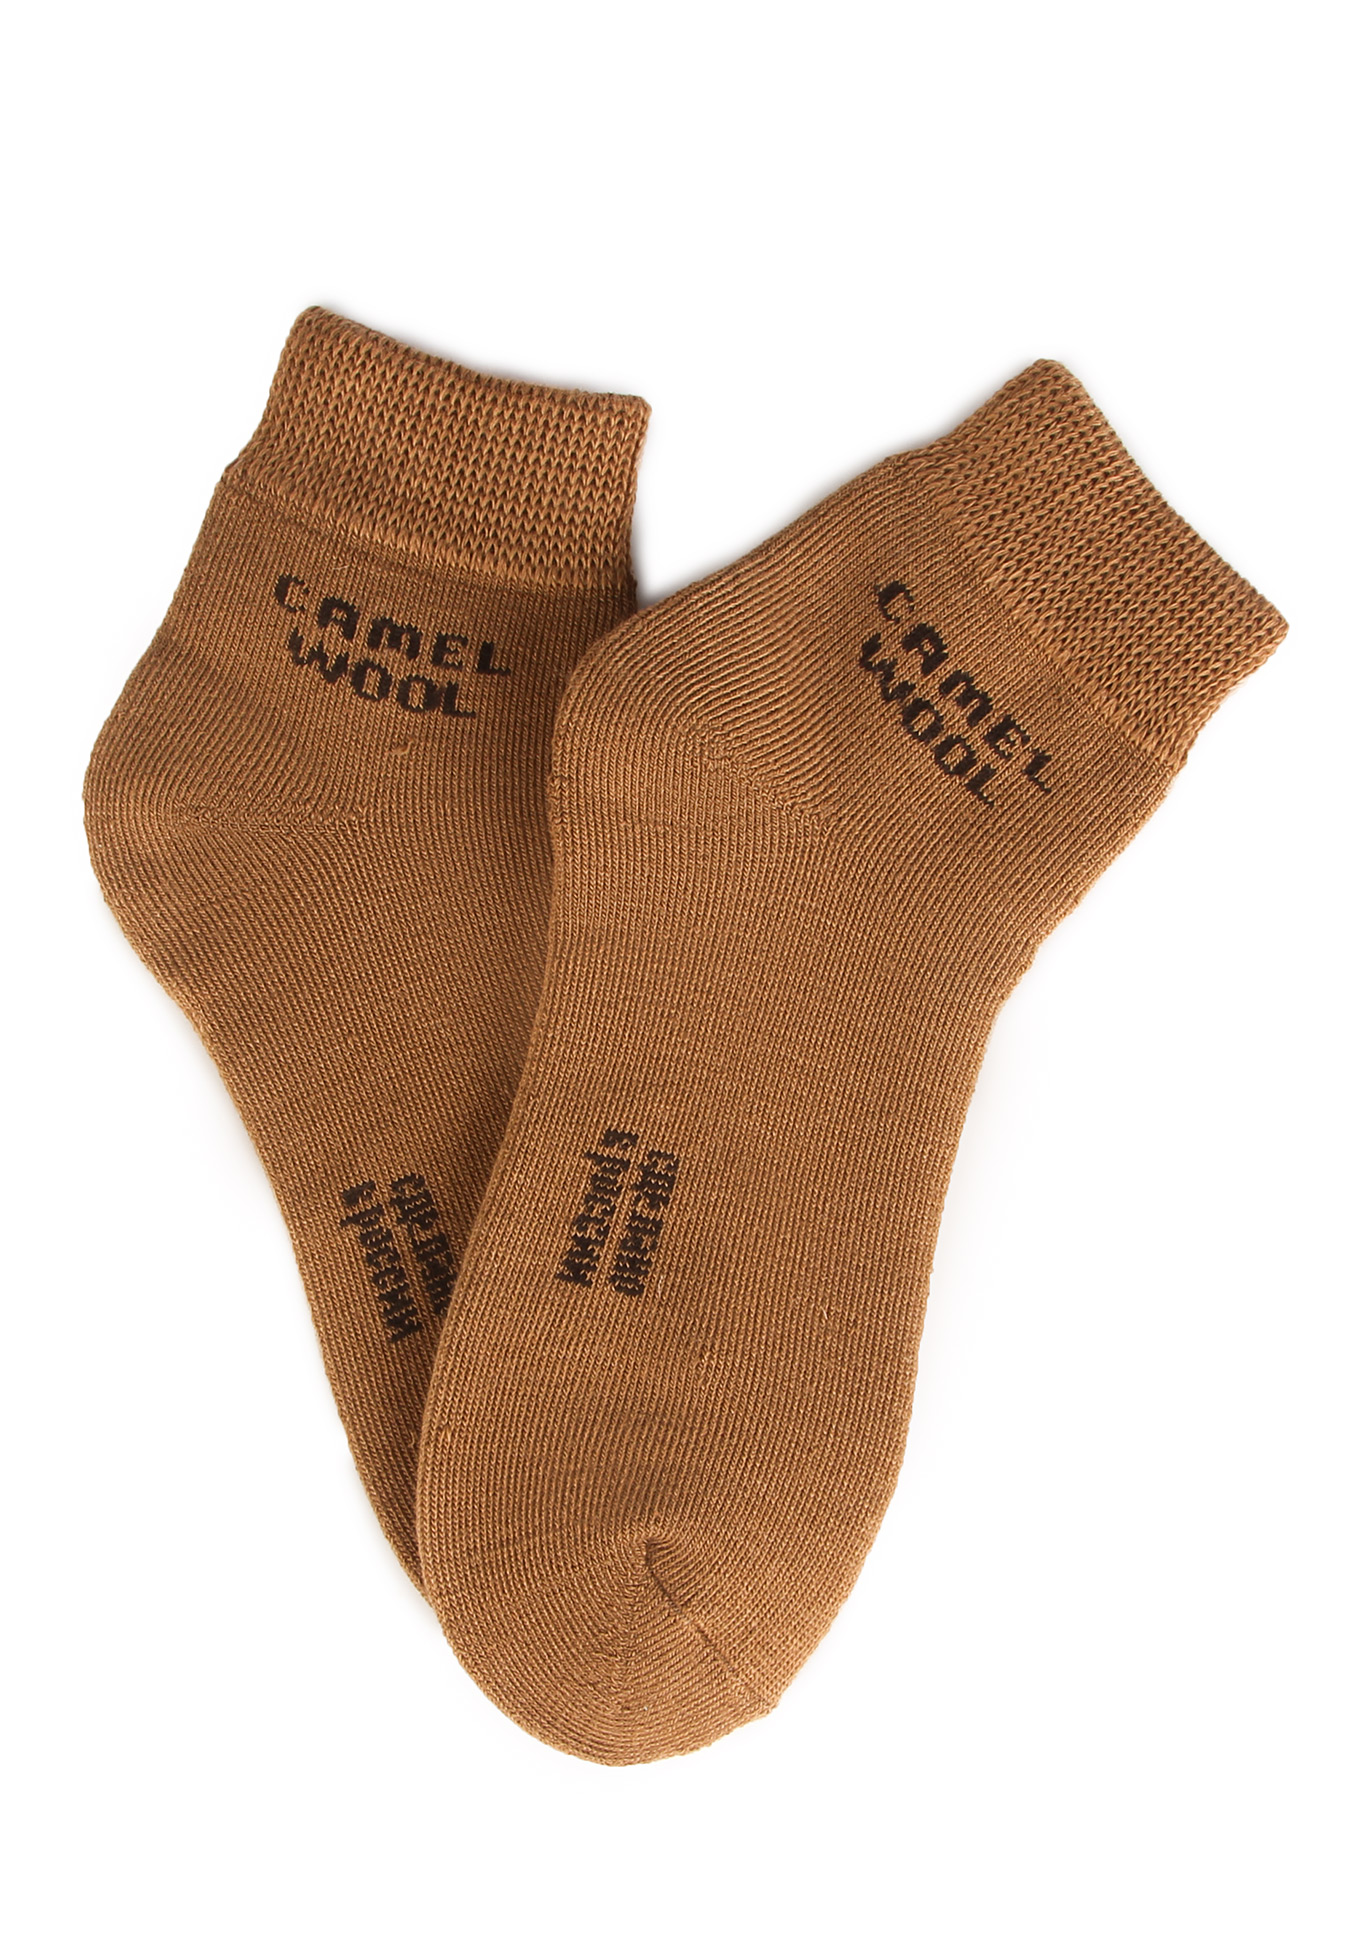 Носки махровые из верблюжьей шерсти, 2 шт. Doctor ТМ, цвет светло-коричневый, размер 42-43 - фото 2